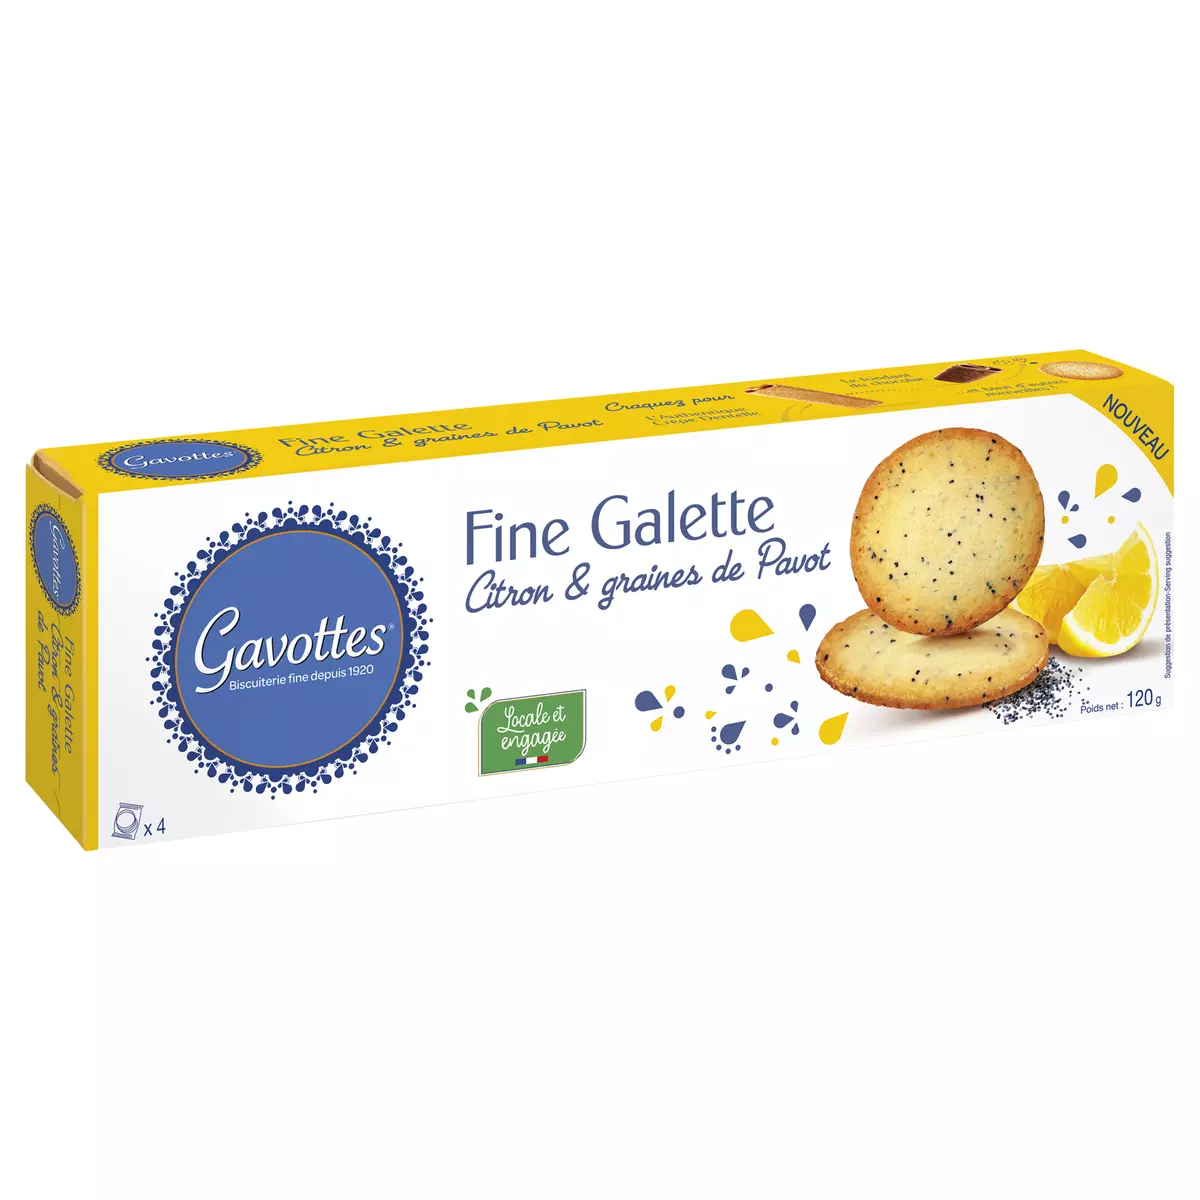 GAVOTTES Fines galettes citron et graines de pavot 4 sachets 120g